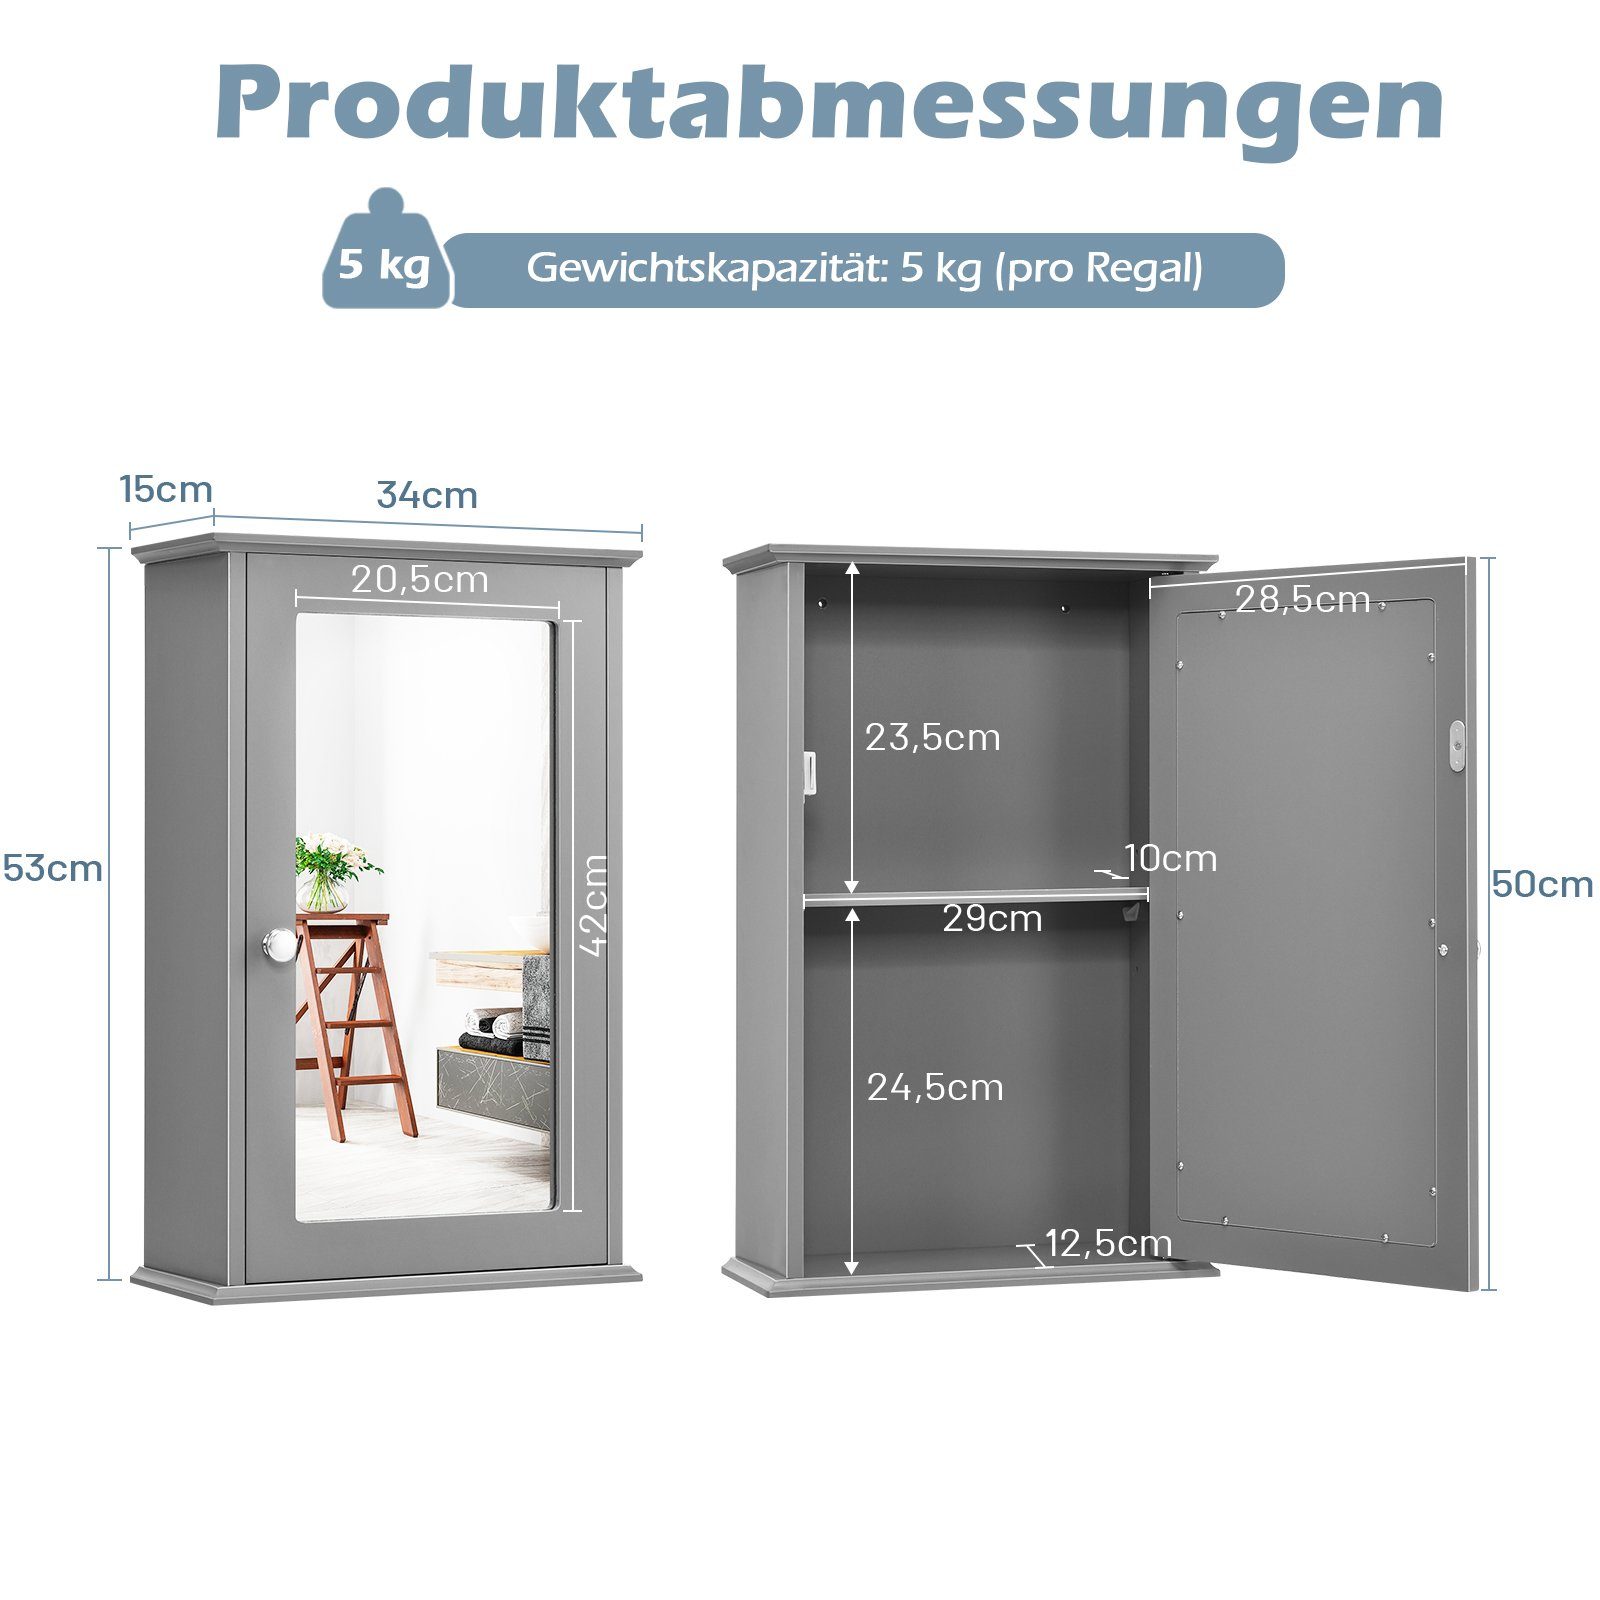 COSTWAY Spiegelschrank Bad, mit Tür Holz, & 34x15x53cm, grau Ablage